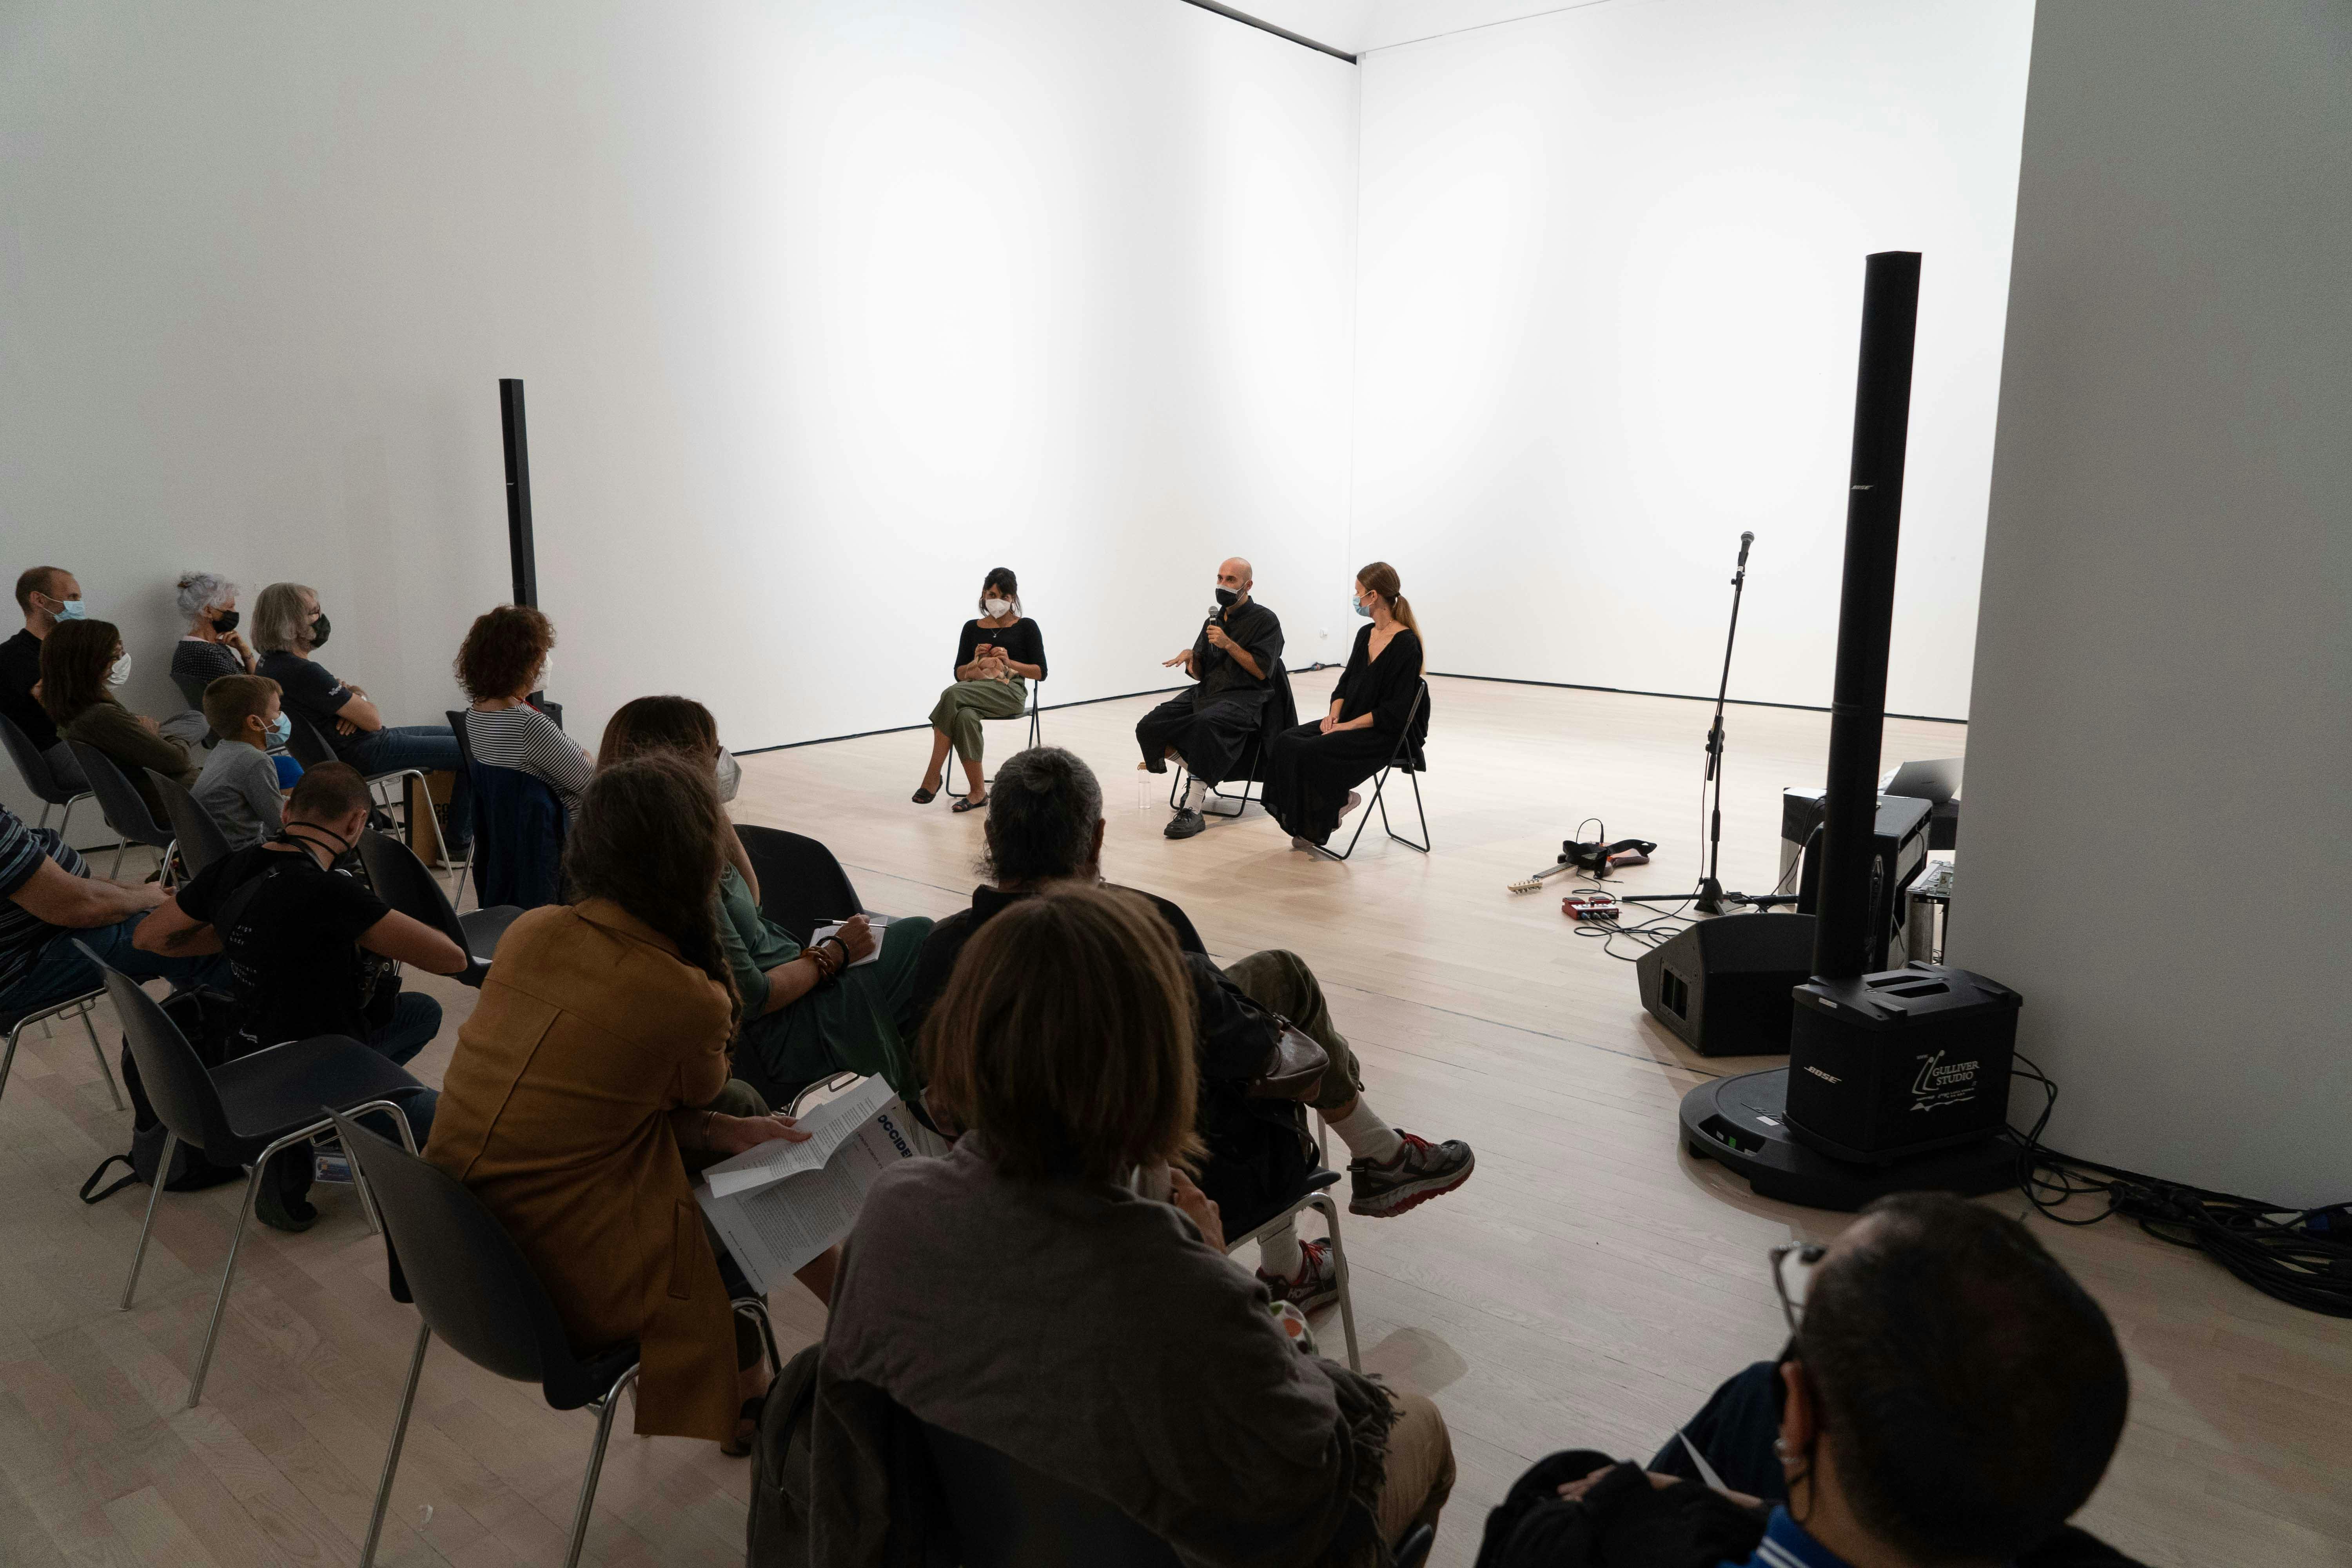 Il coreografo Daniele Ninarello, la sociologa Mariella Popolla e la drammaturga Gaia Clorilde Chernetich seduti al centro dello spazio performativo, parlano con il pubblico di fronte a loro.